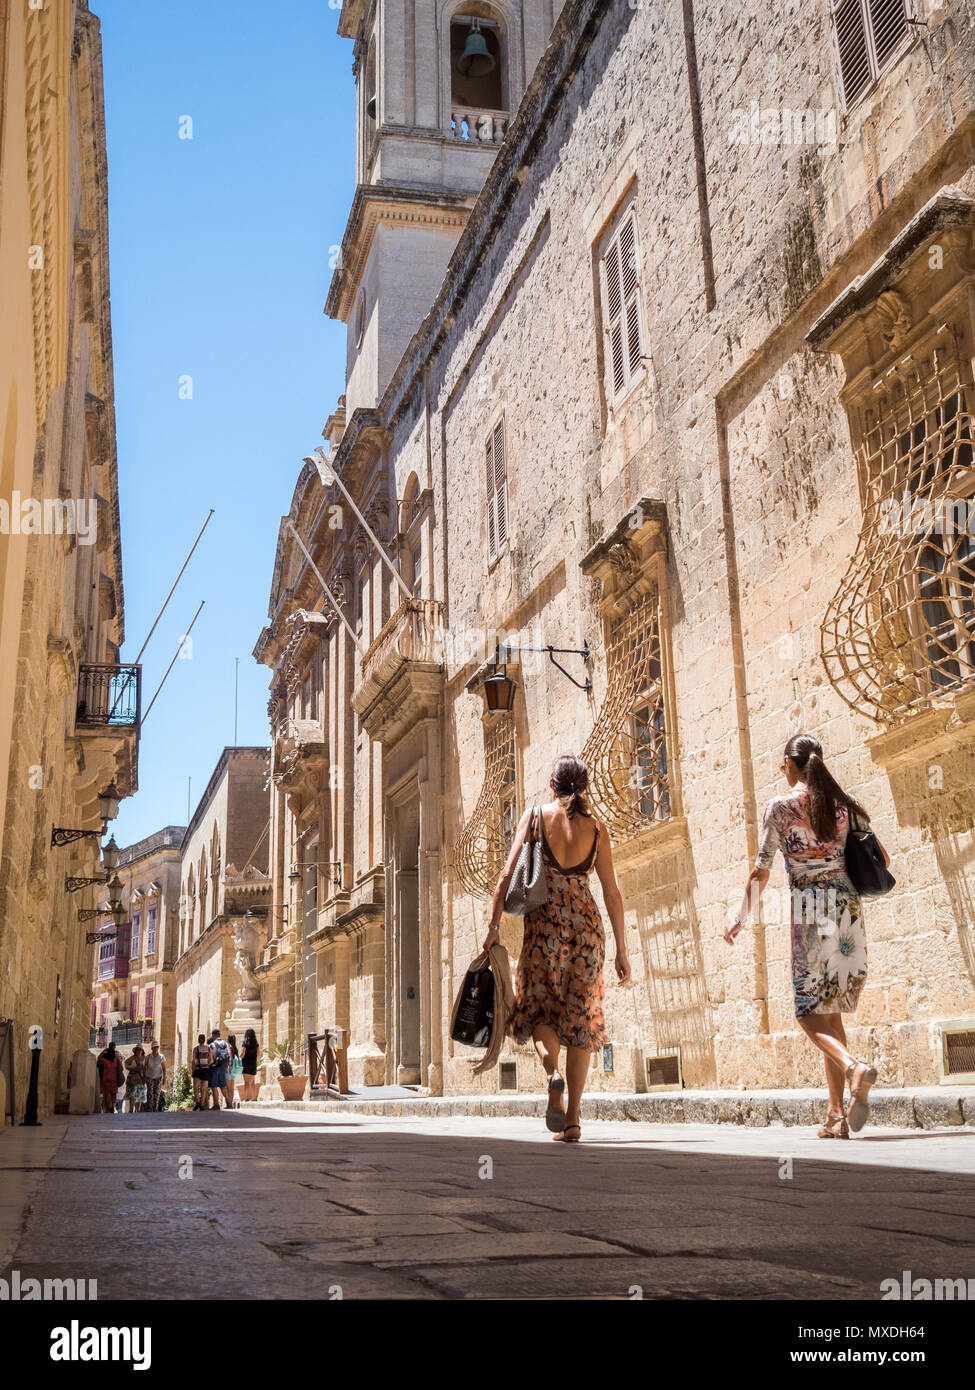 Deux femmes à pied dans une rue étroite à Mdina, l'ancienne capitale de Malte, sous un ciel bleu. Banque D'Images